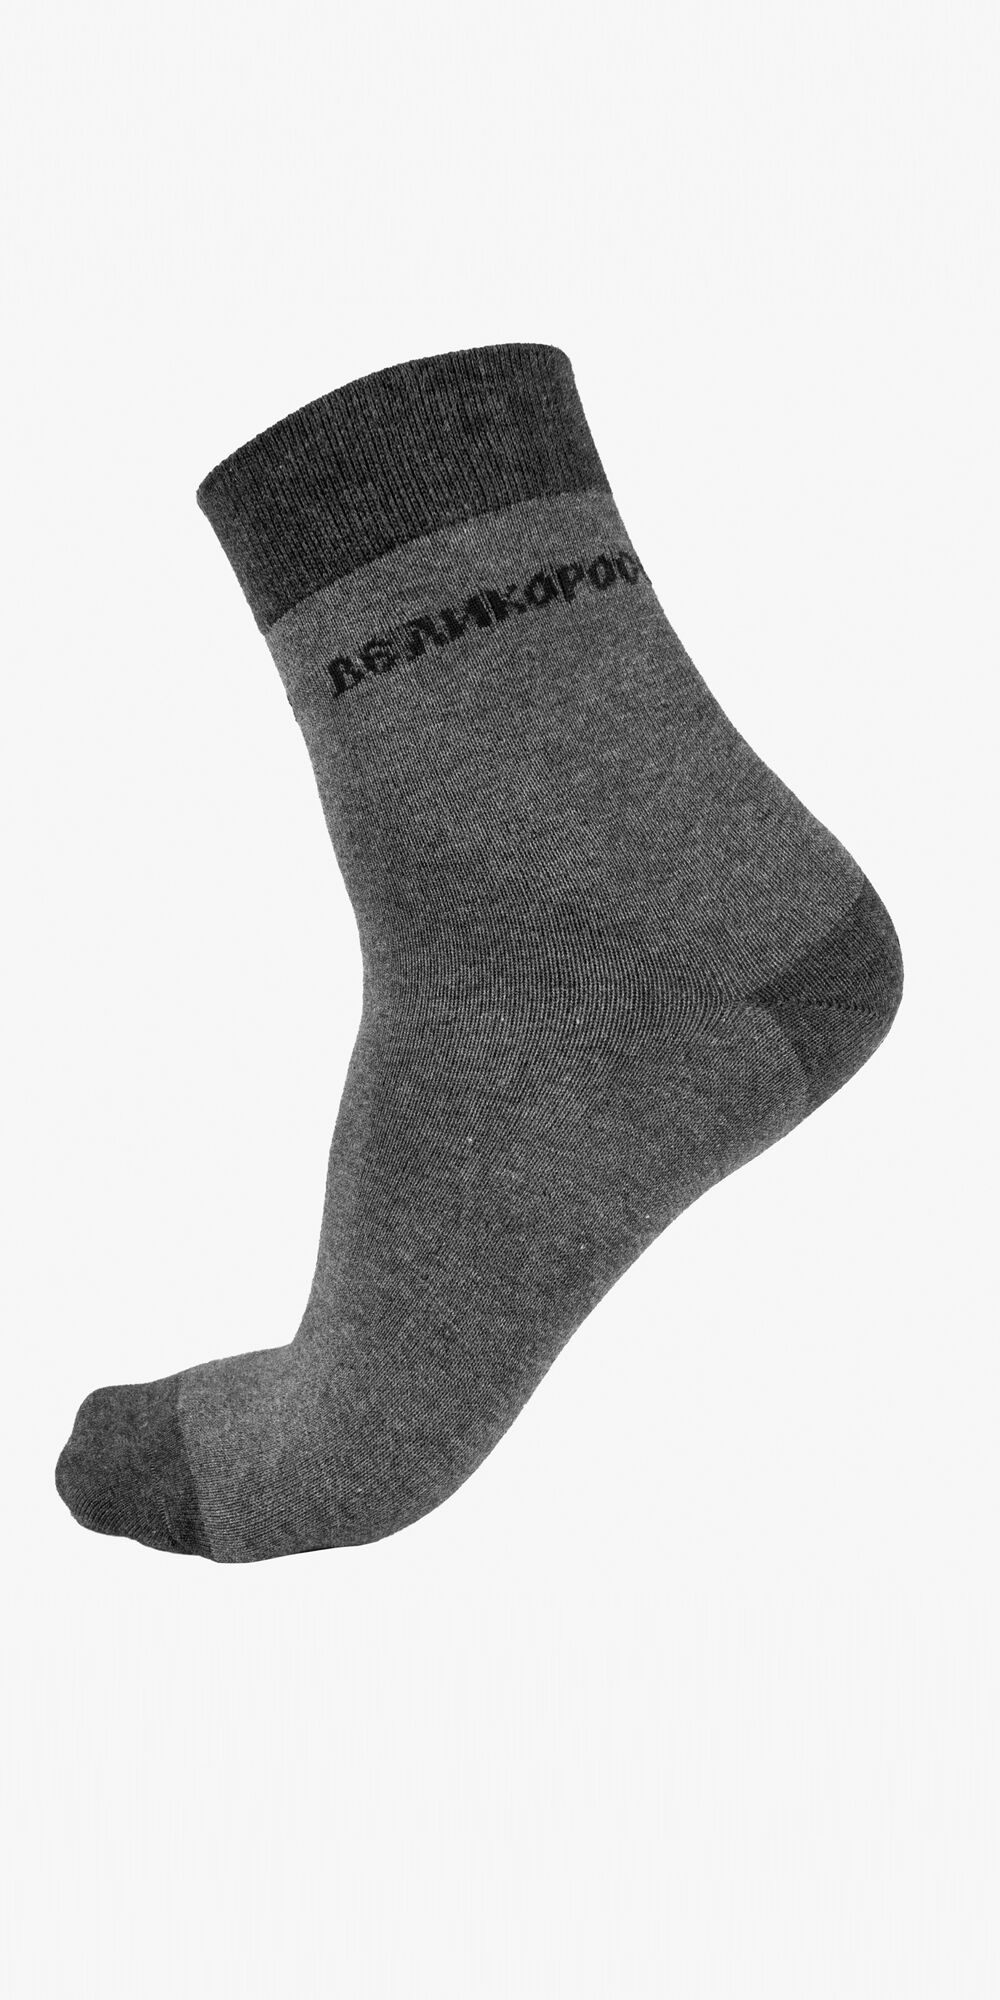 Мужские носки длинные серого цвета (двухцветные)